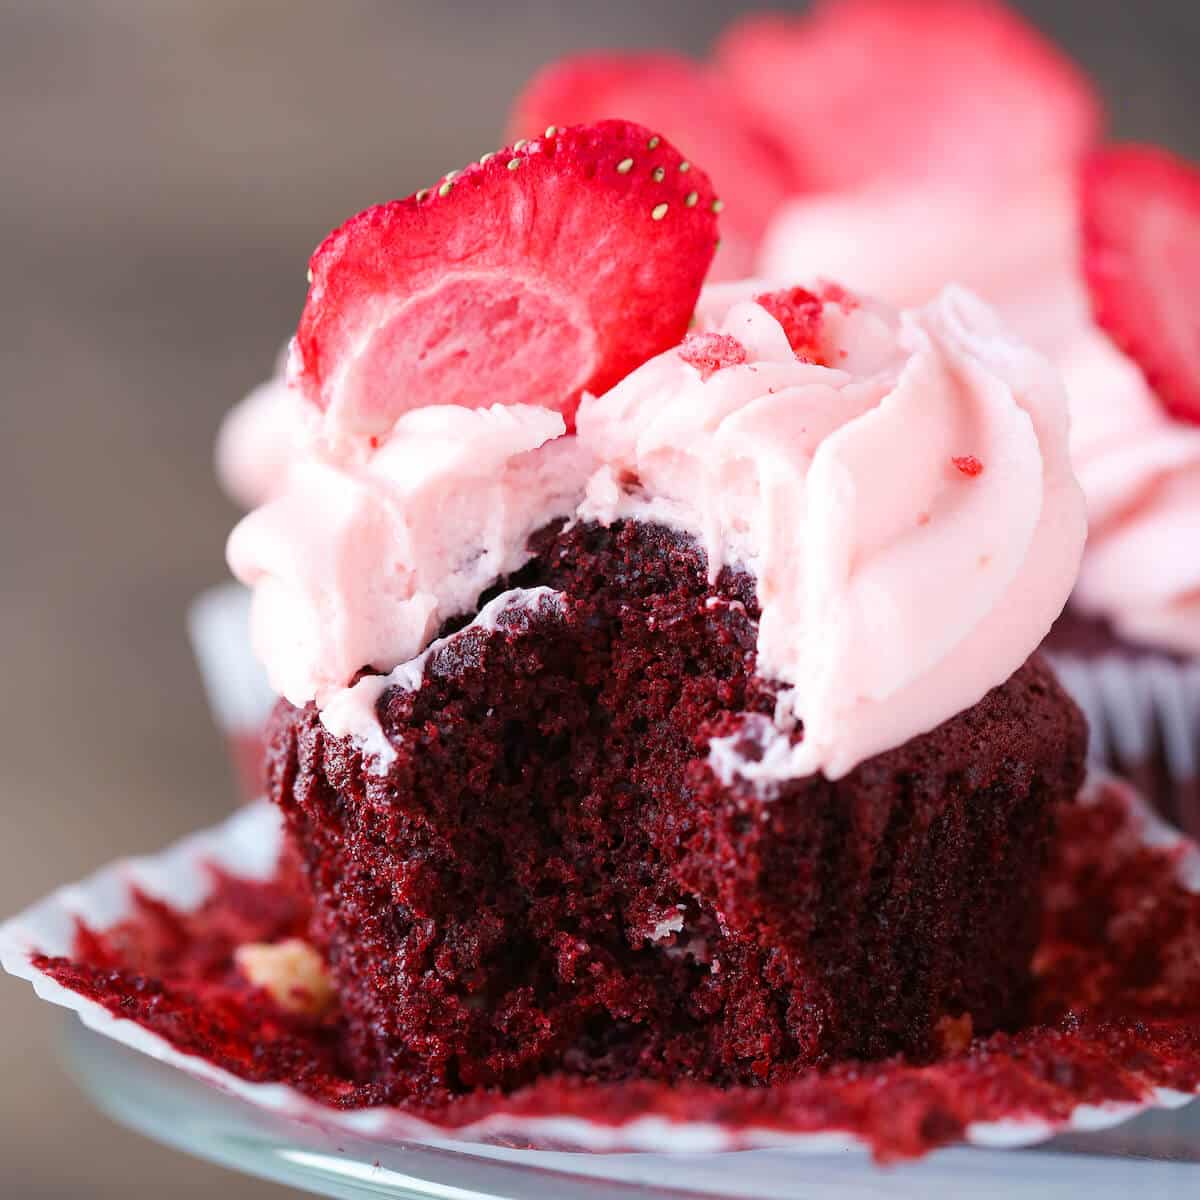 My Favorite Red Velvet Cupcakes - Joy the Baker